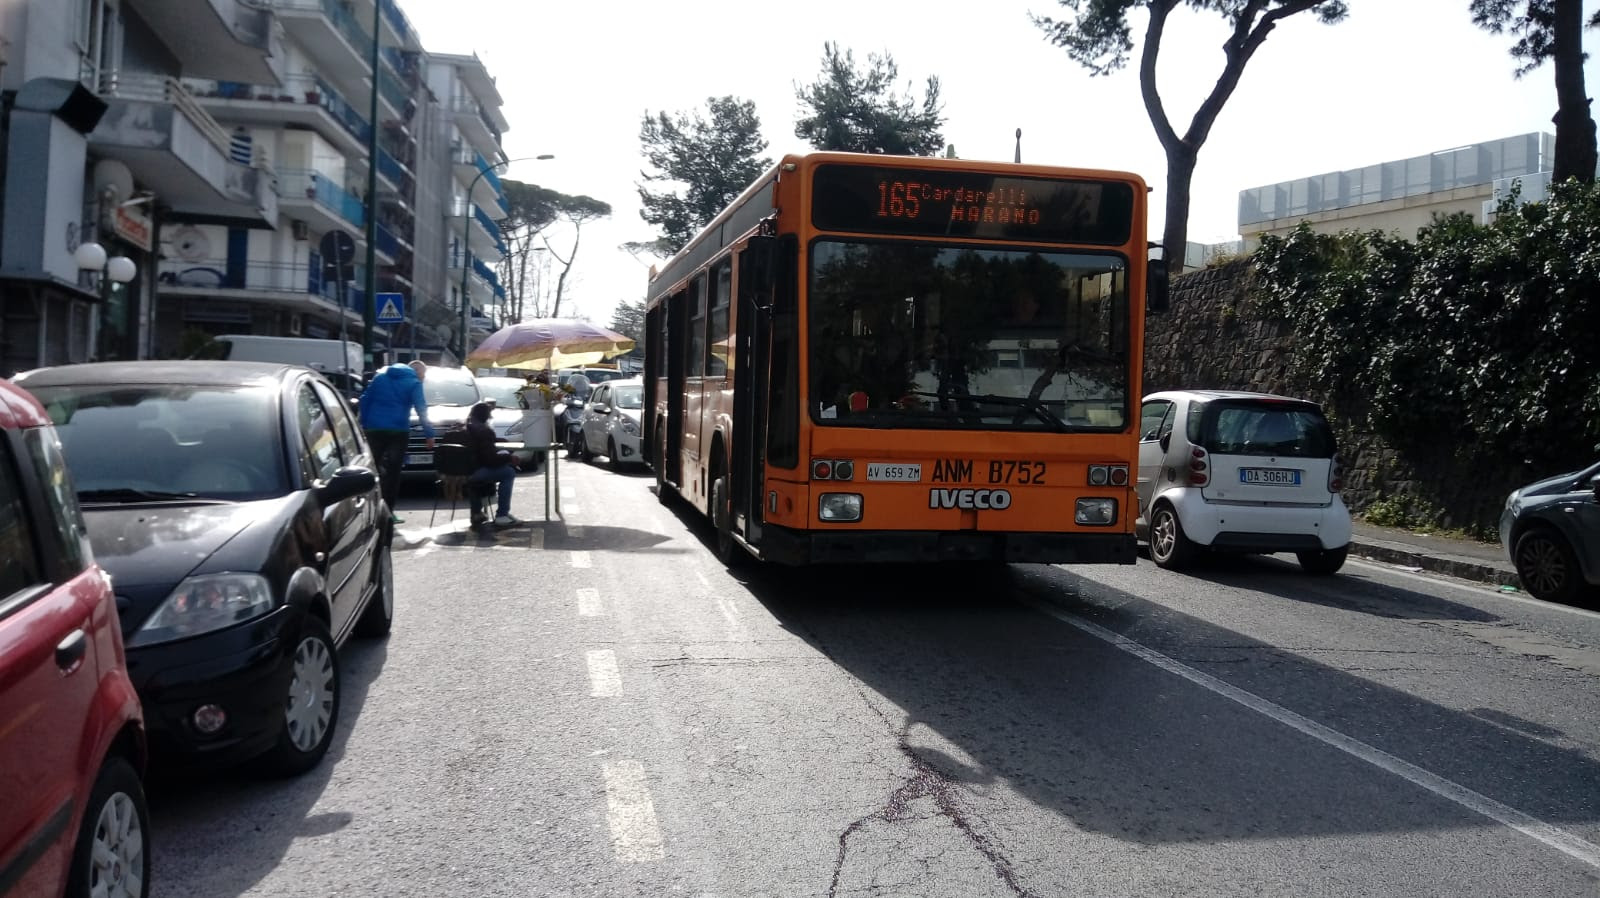 Napoli, dossier sugli autobus ostacolati dalla sosta selvaggia: 2500 infrazioni su una sola linea. I Verdi: ‘Situazione insostenibile’